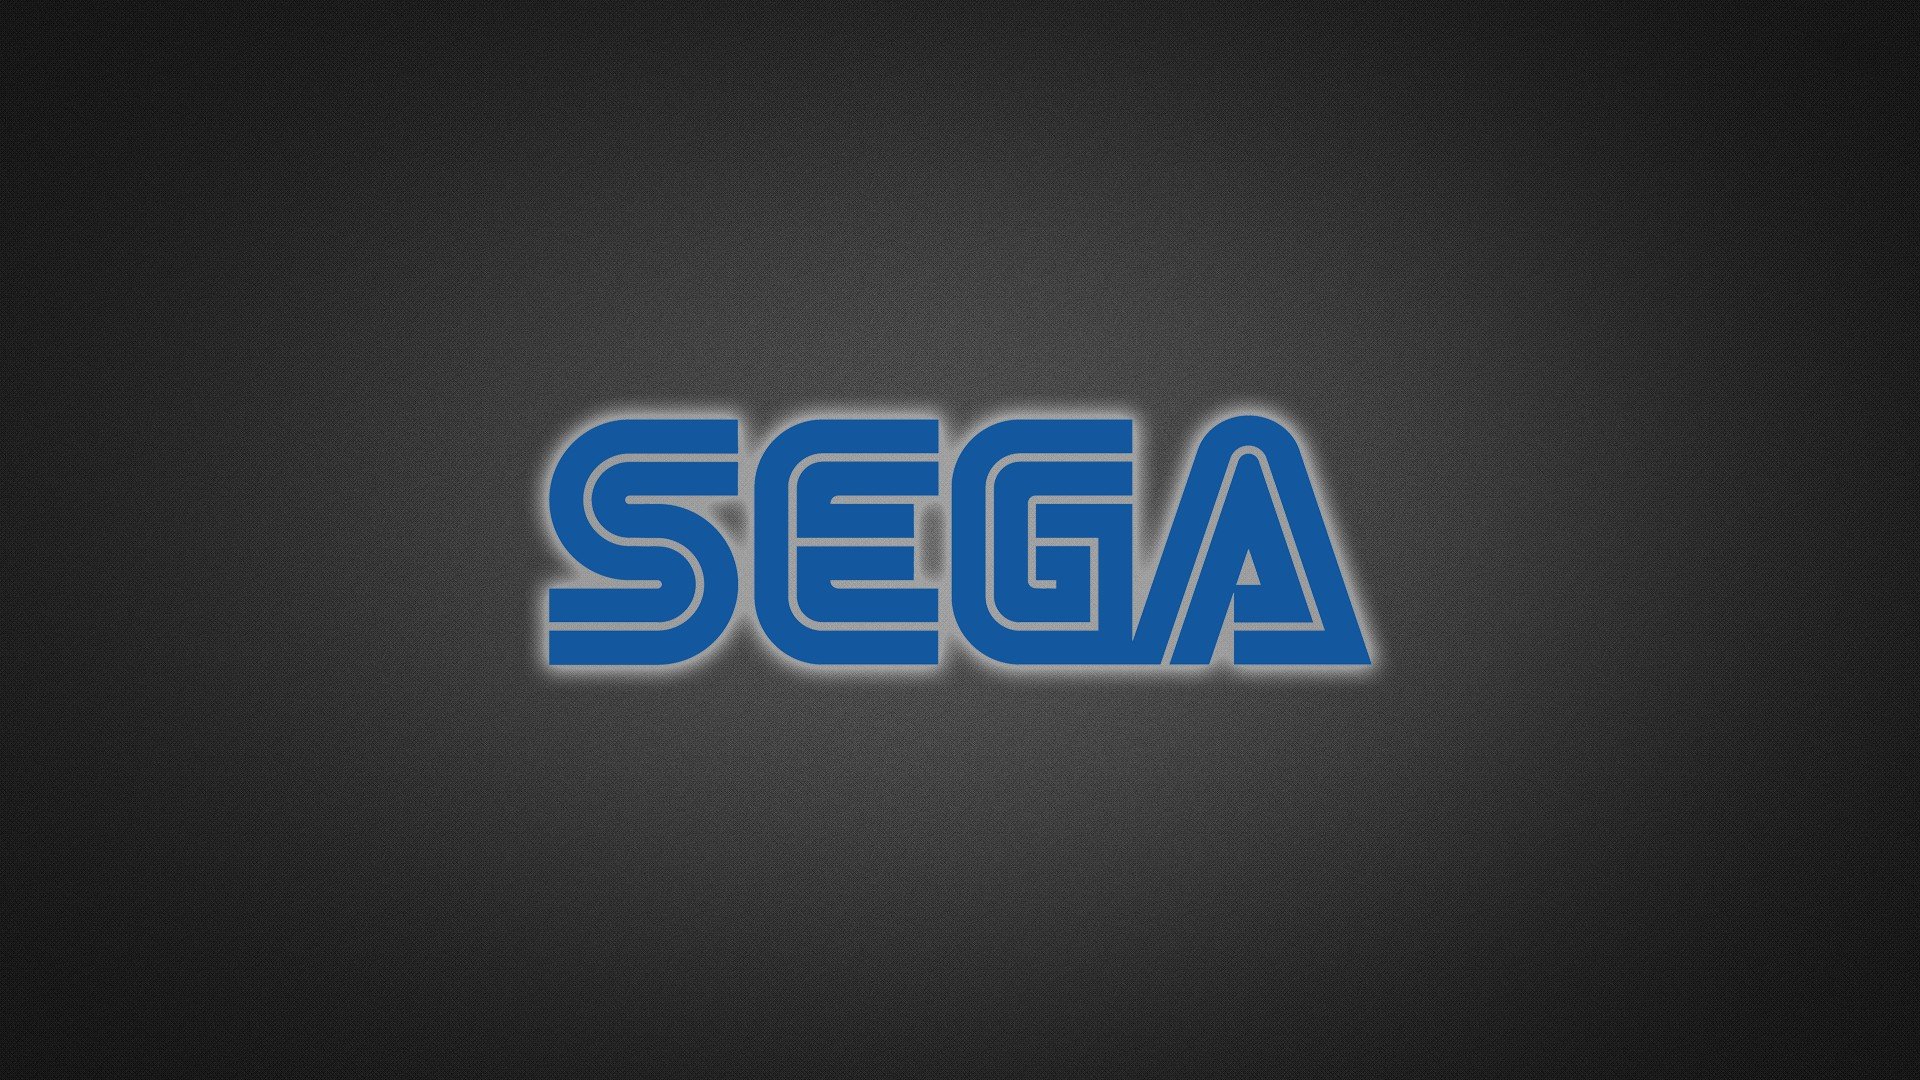 Sega Wallpaper